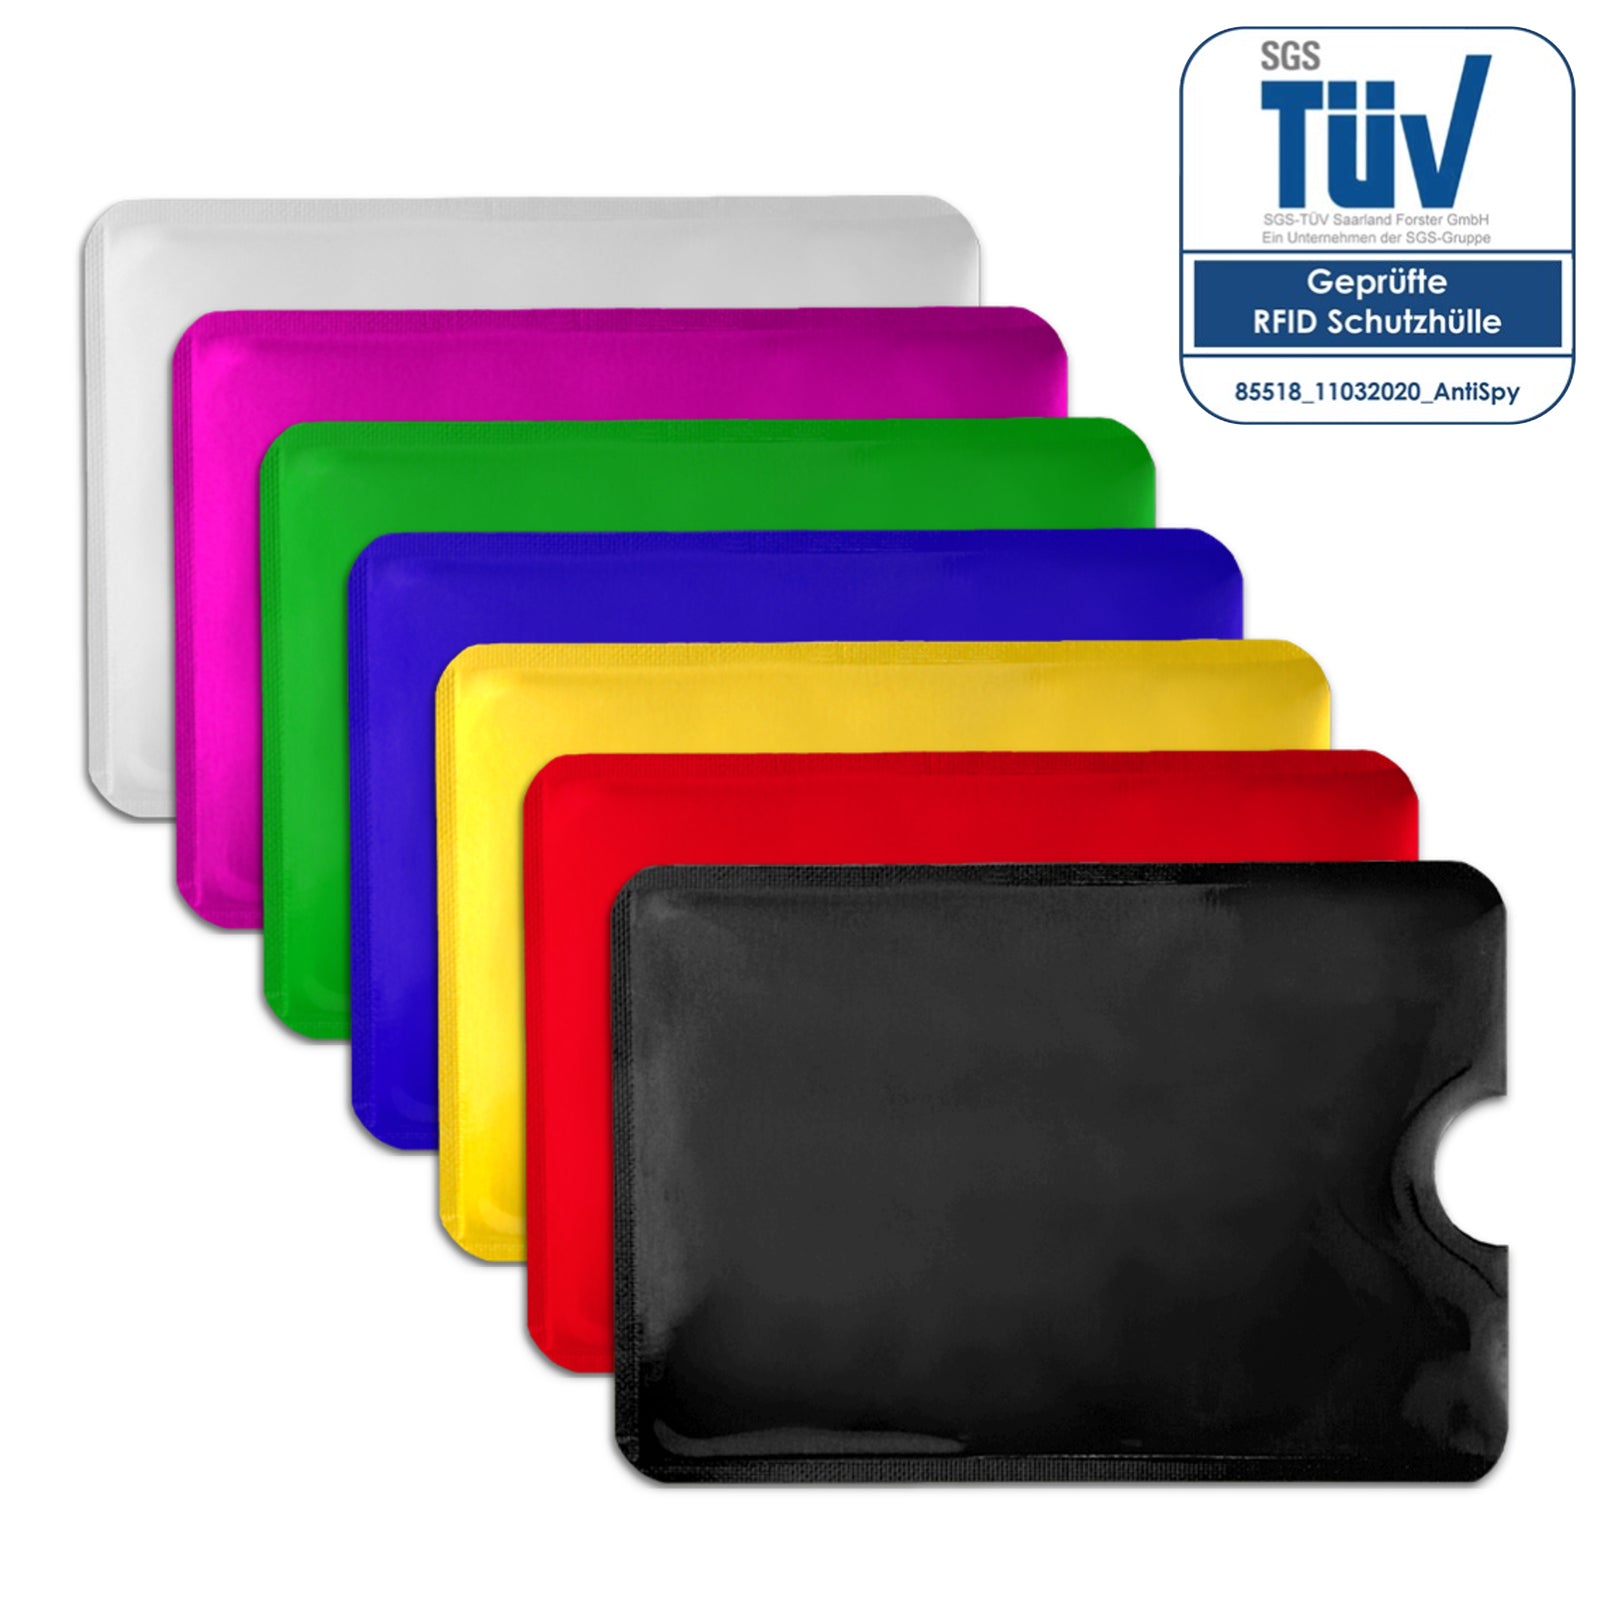 AntiSpyShop RFID card sleeves - different colors